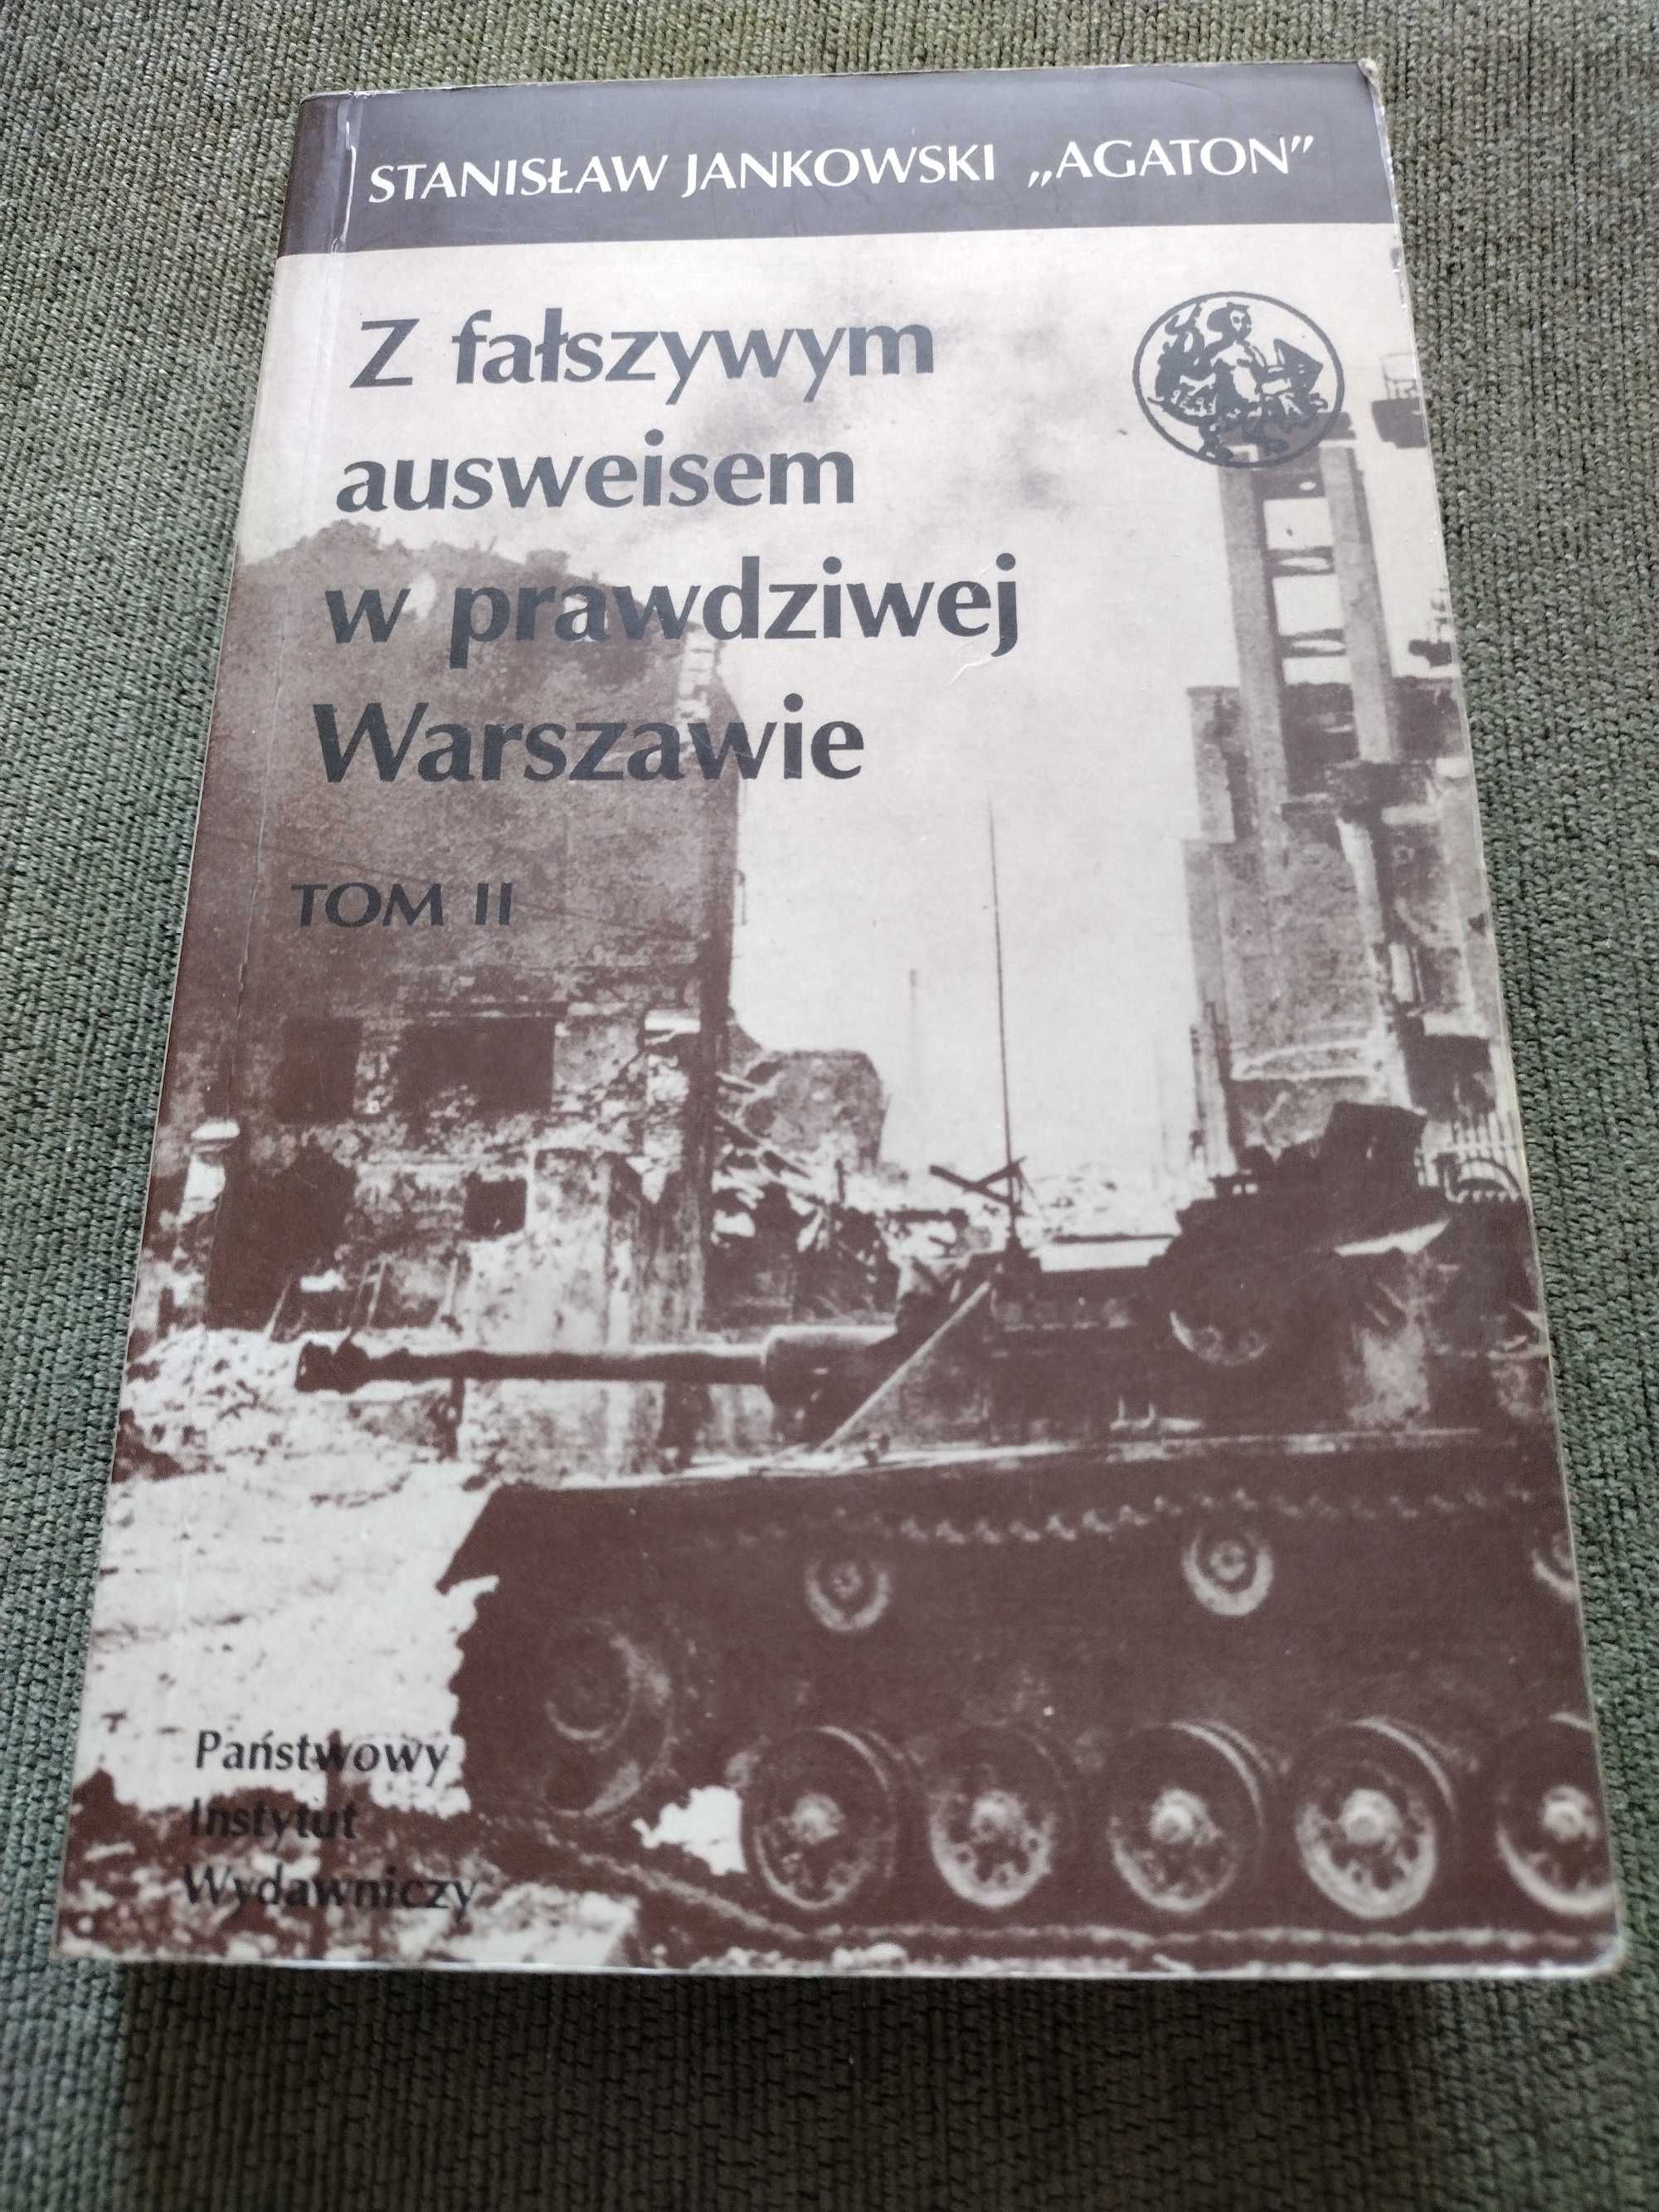 "Z fałszywym ausweisem w prawdziwej Warszawie" Stanisław Jankowski